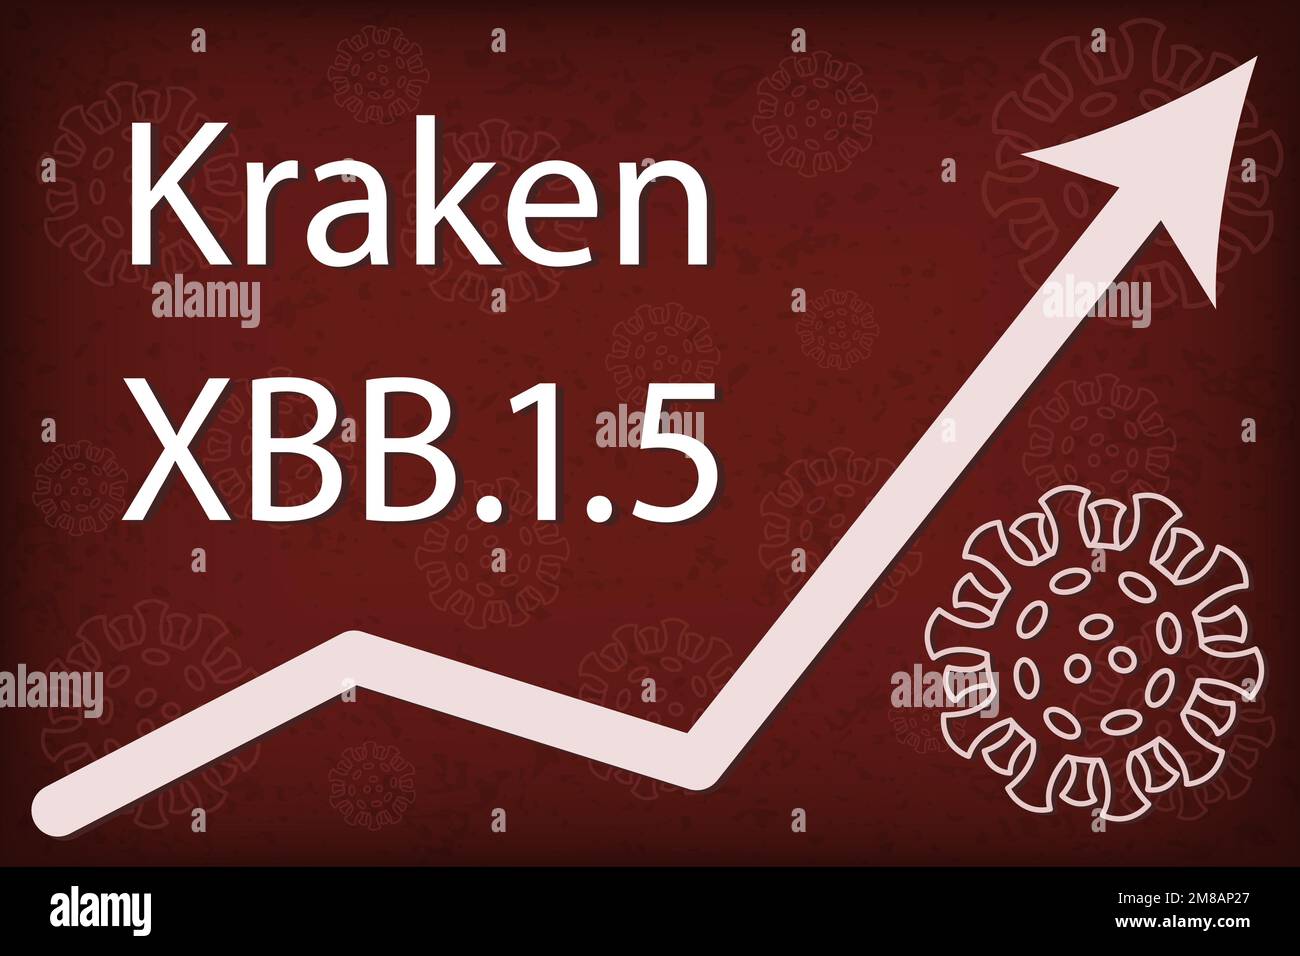 Sous-variante OMICRON XBB.1,5 également connue sous le nom de Kraken. La flèche indique une augmentation spectaculaire de la maladie. Texte blanc sur fond rouge foncé. Illustration de Vecteur